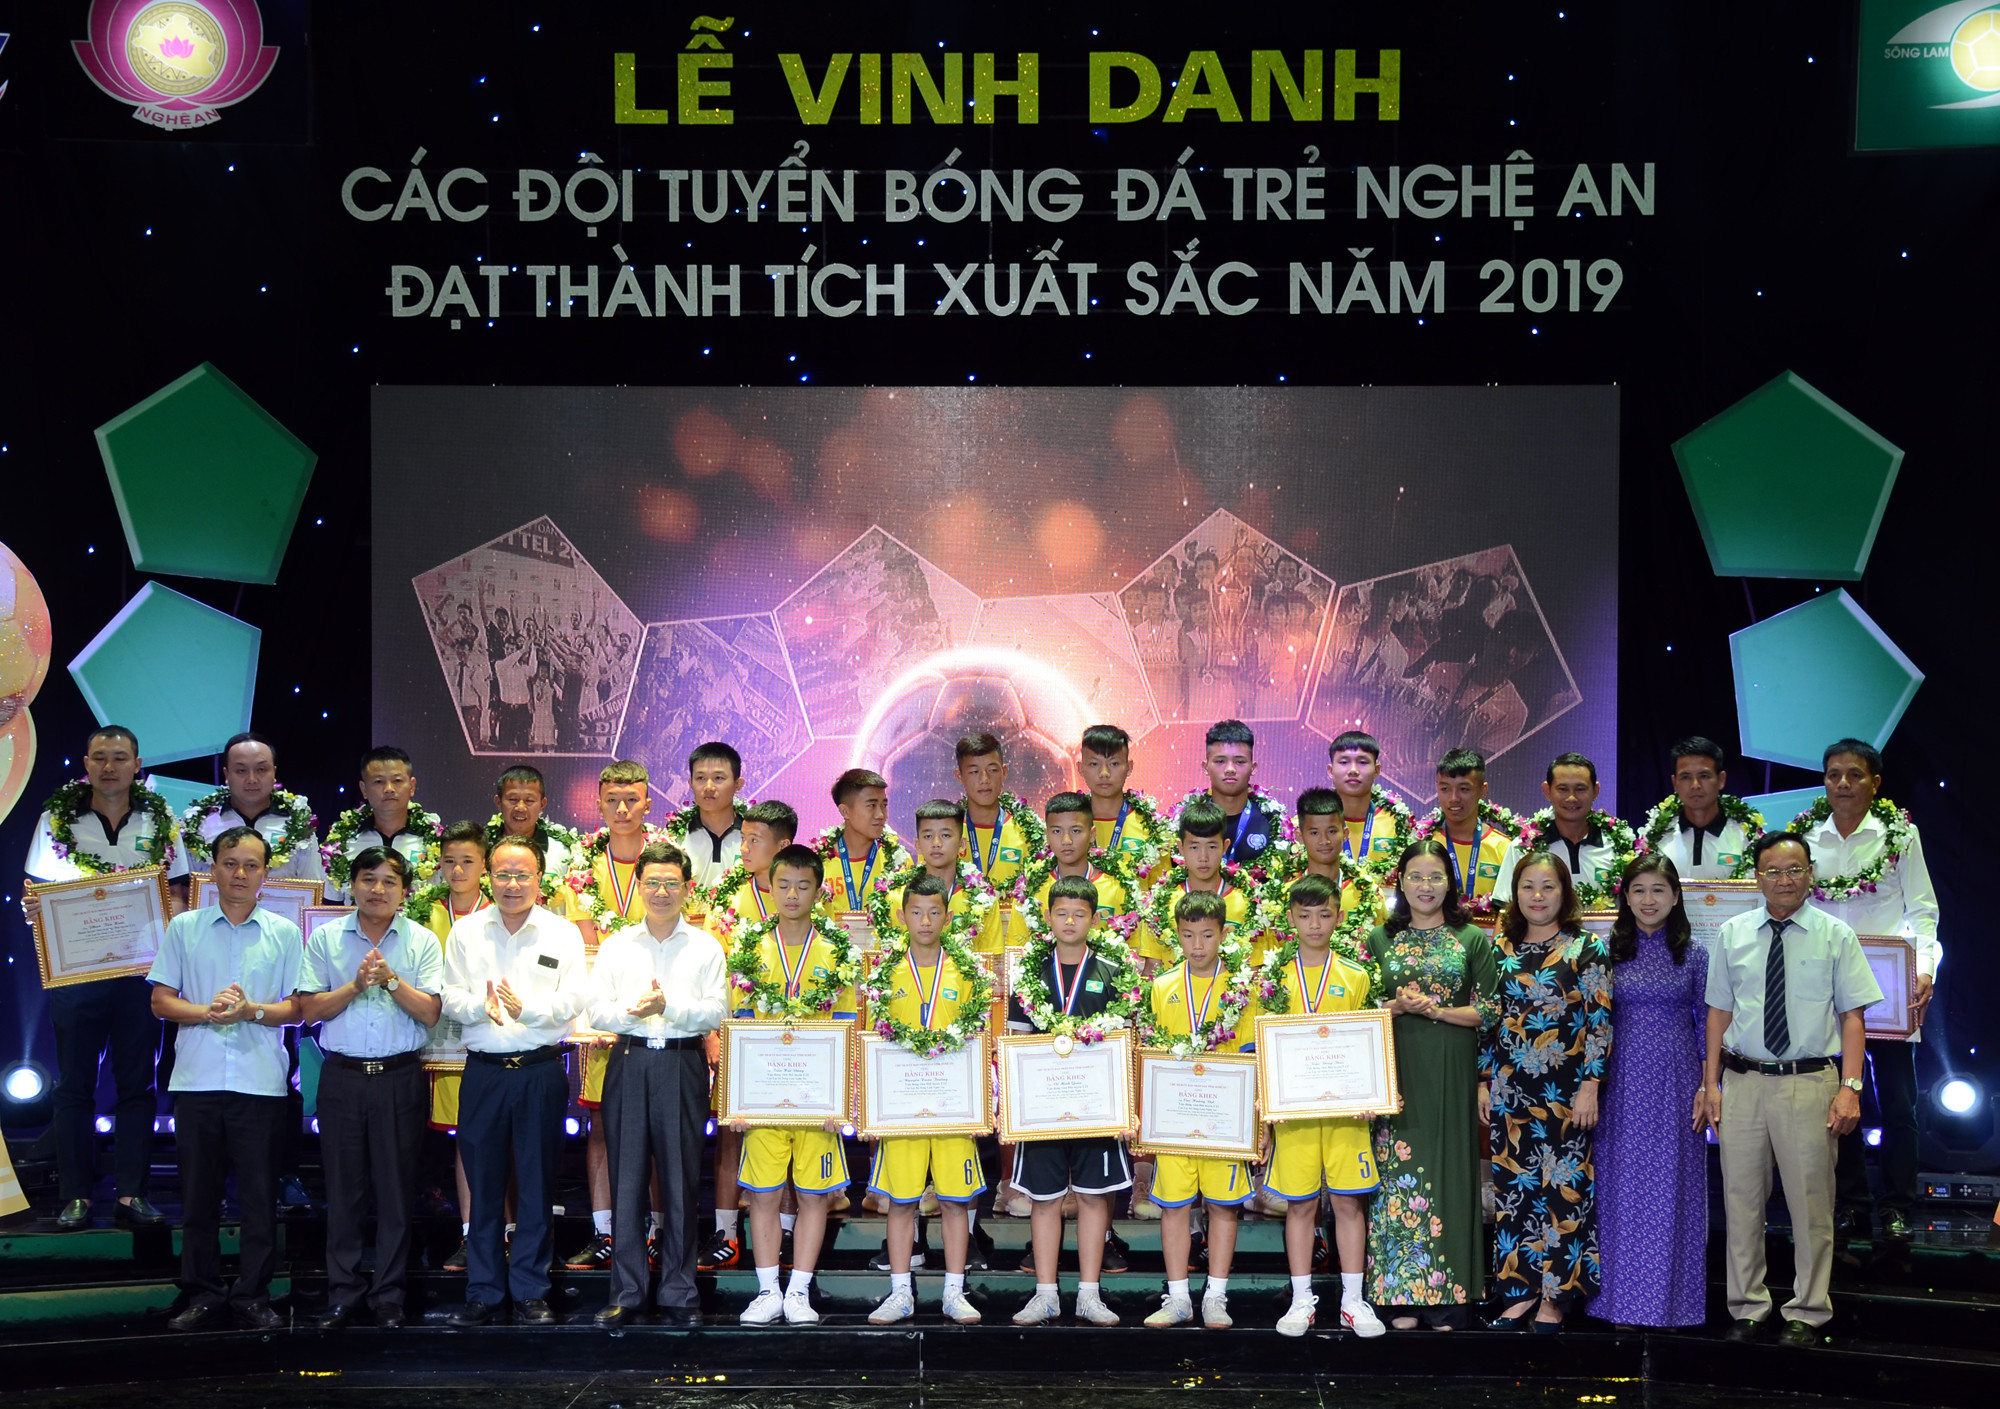 Lễ tôn vinh các đội bóng đá trẻ tỉnh Nghệ An giành chức vô địch quốc gia năm 2019. Ảnh: Đức Anh